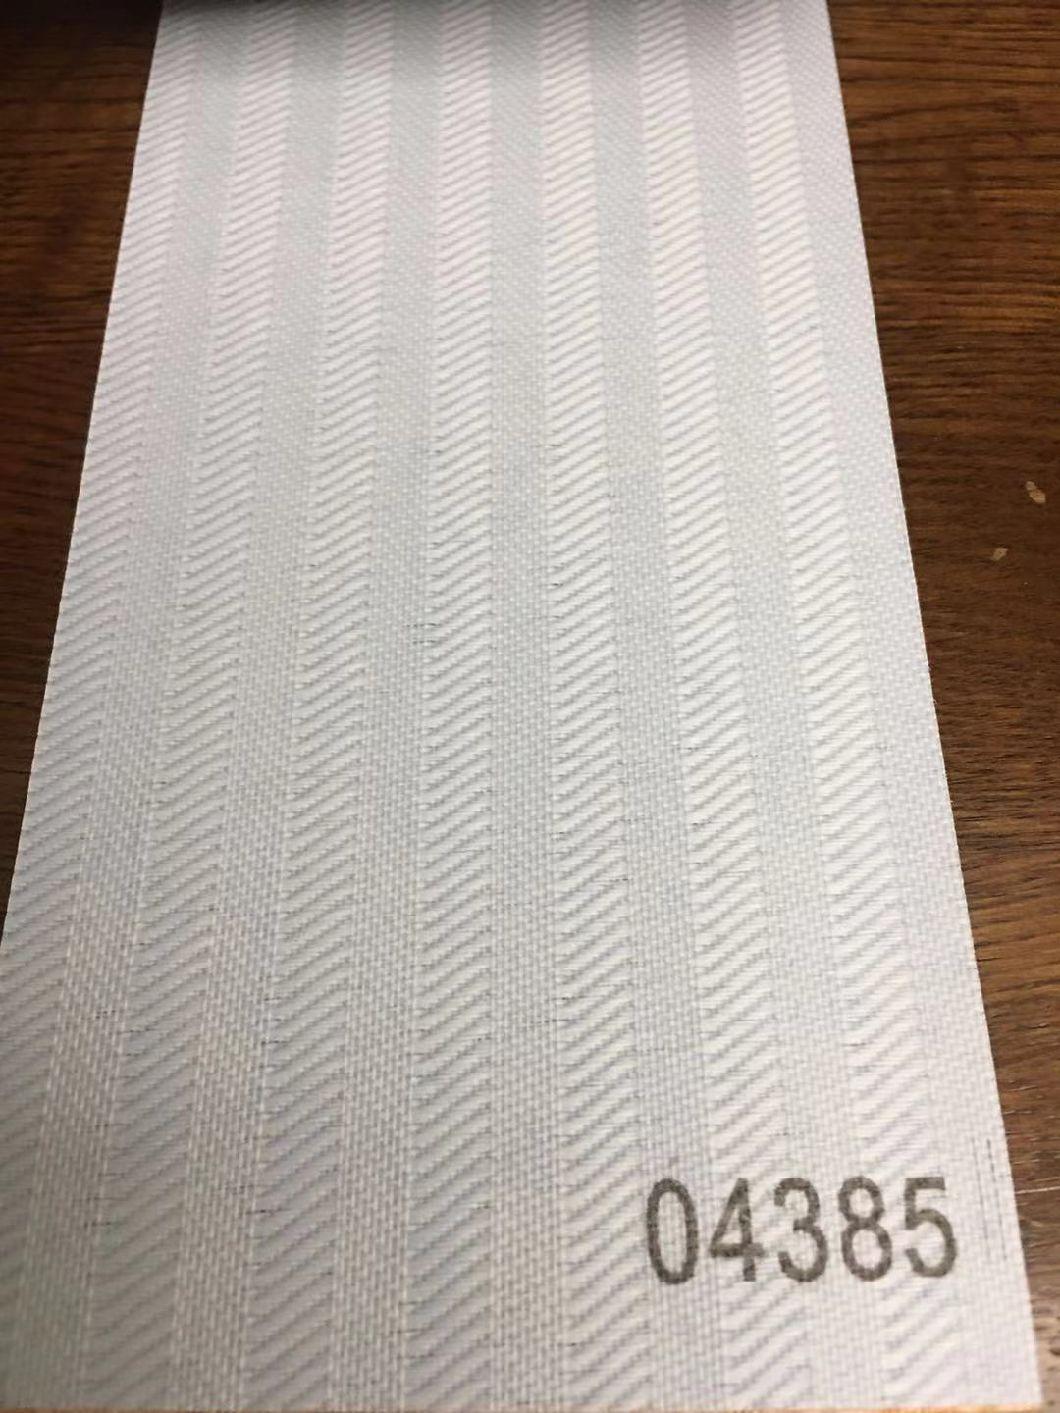 V10 Vertical Blinds Fabric